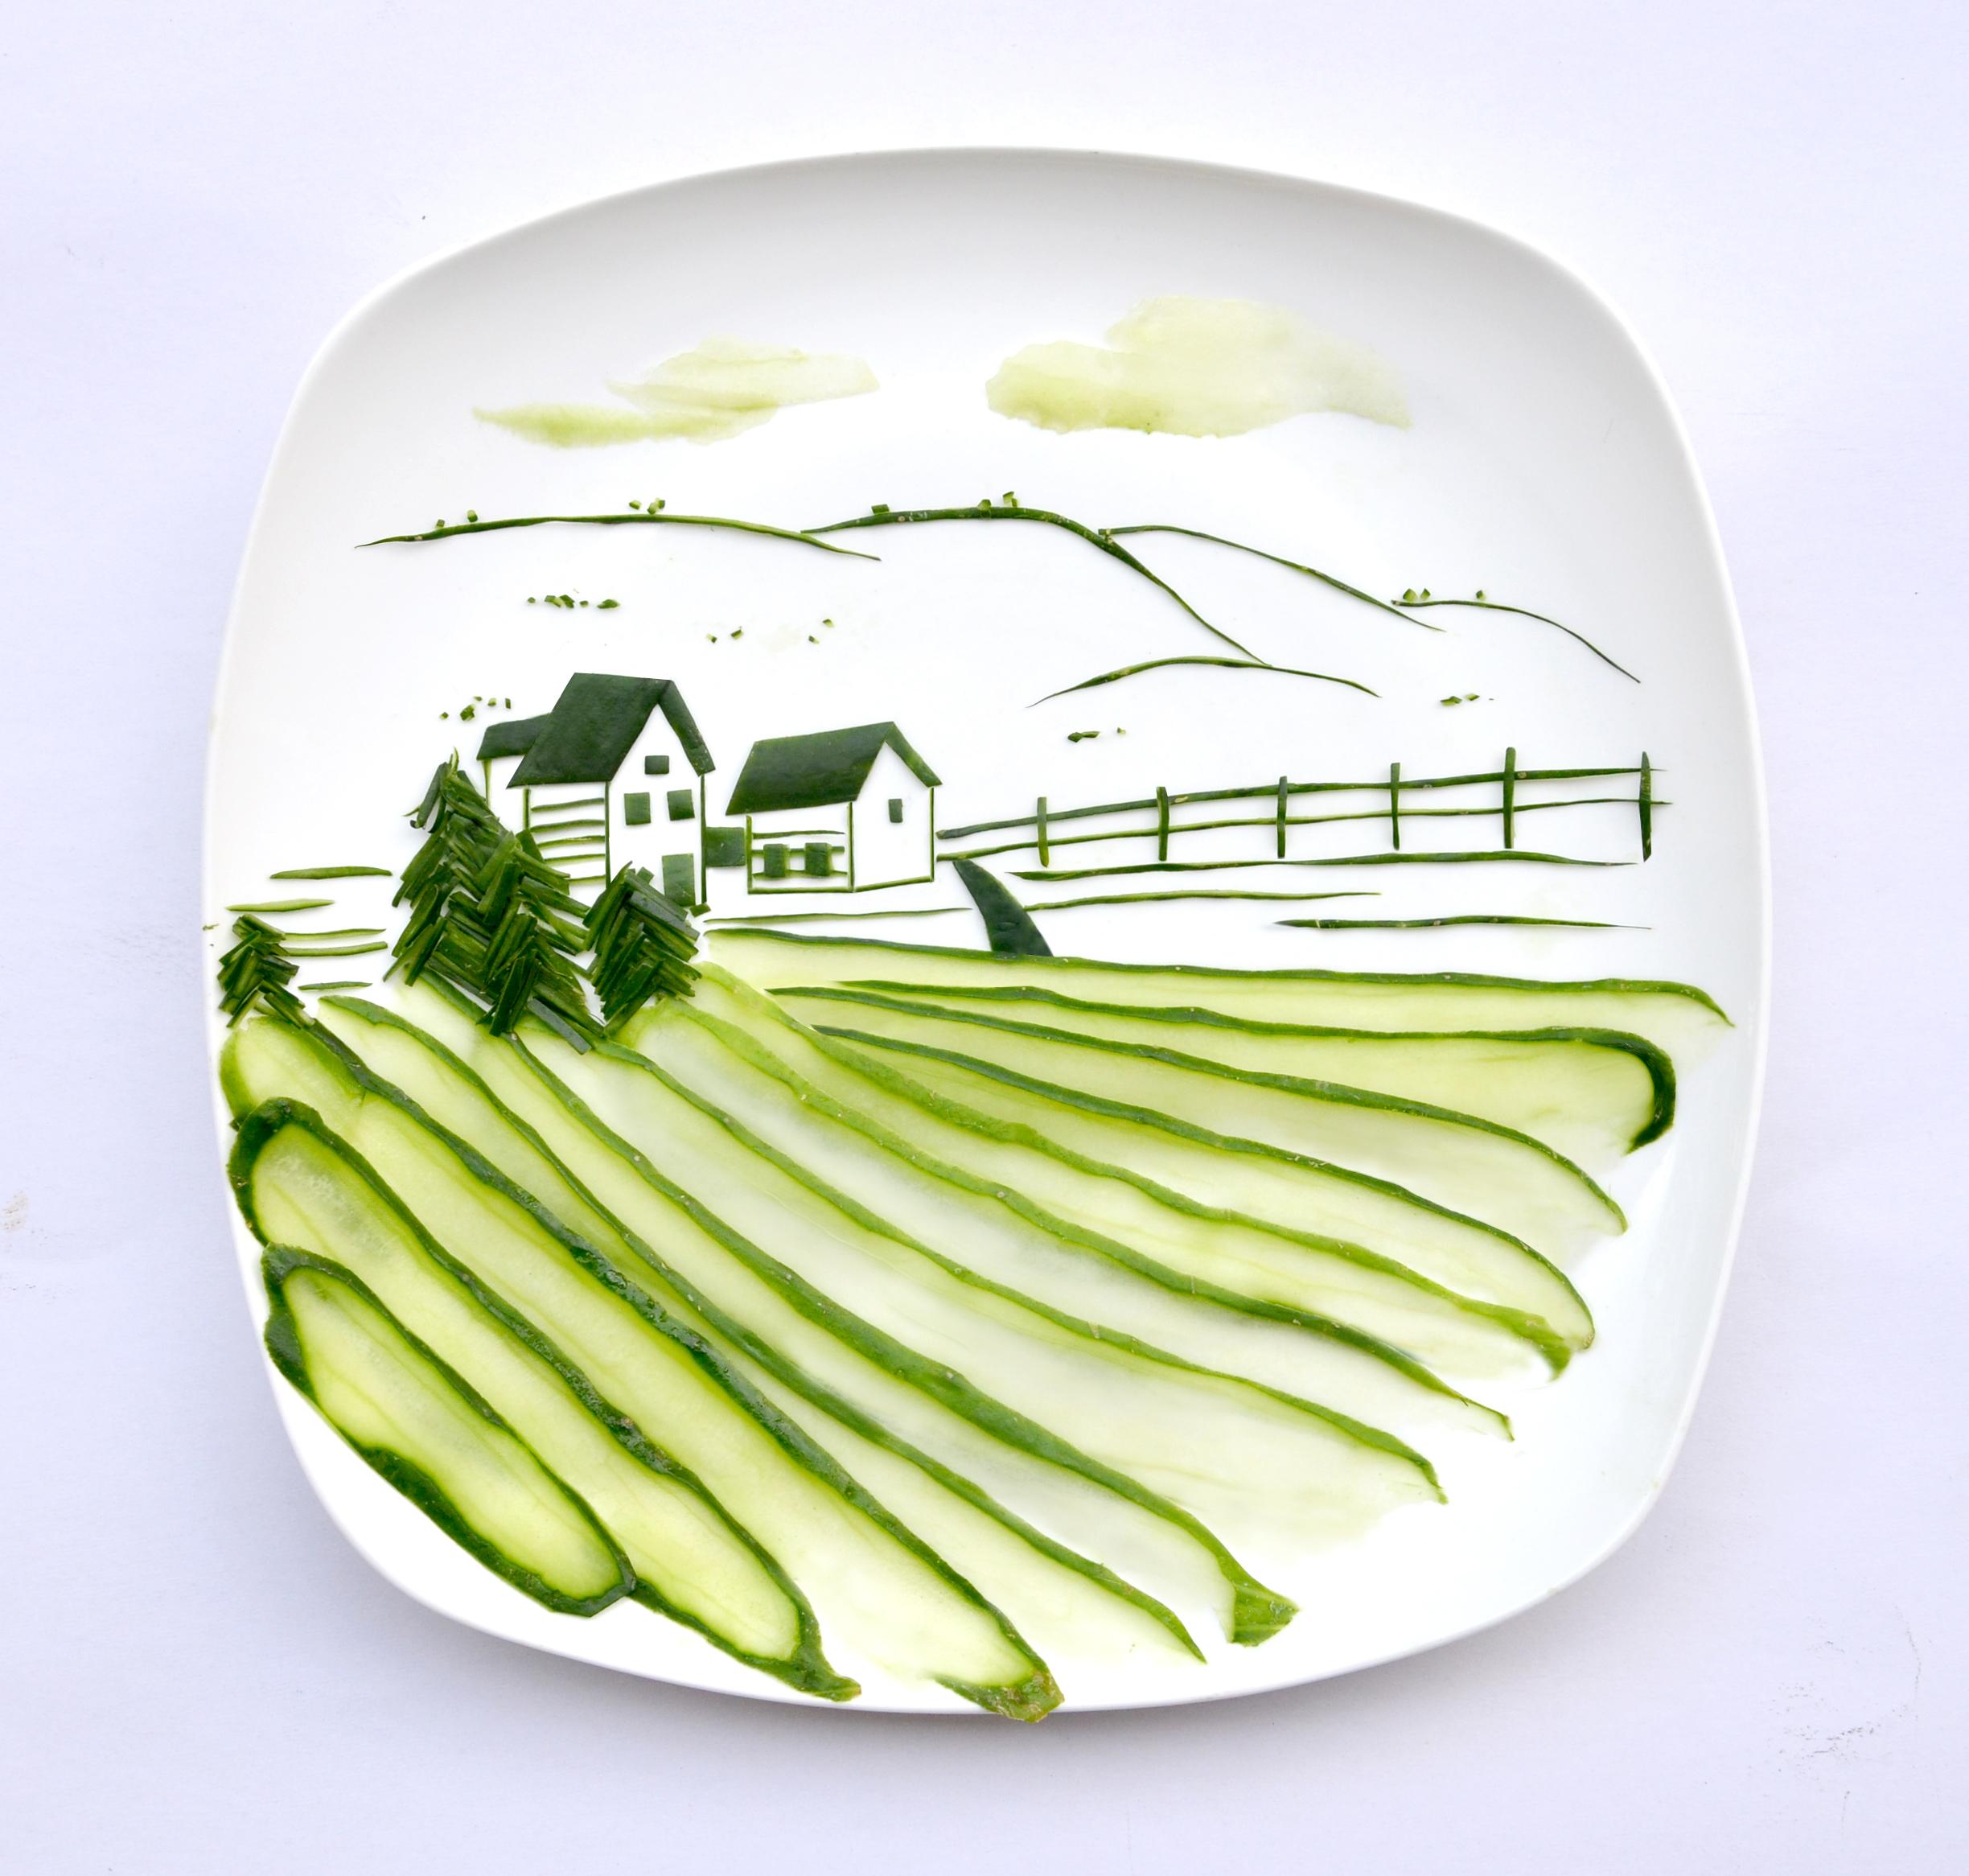 Съедобные тарелки. Хонг Йи художник. Фуд-арт от художницы Хонг Йи (Hong yi). Креативные тарелки для еды. Тарелка с едой.